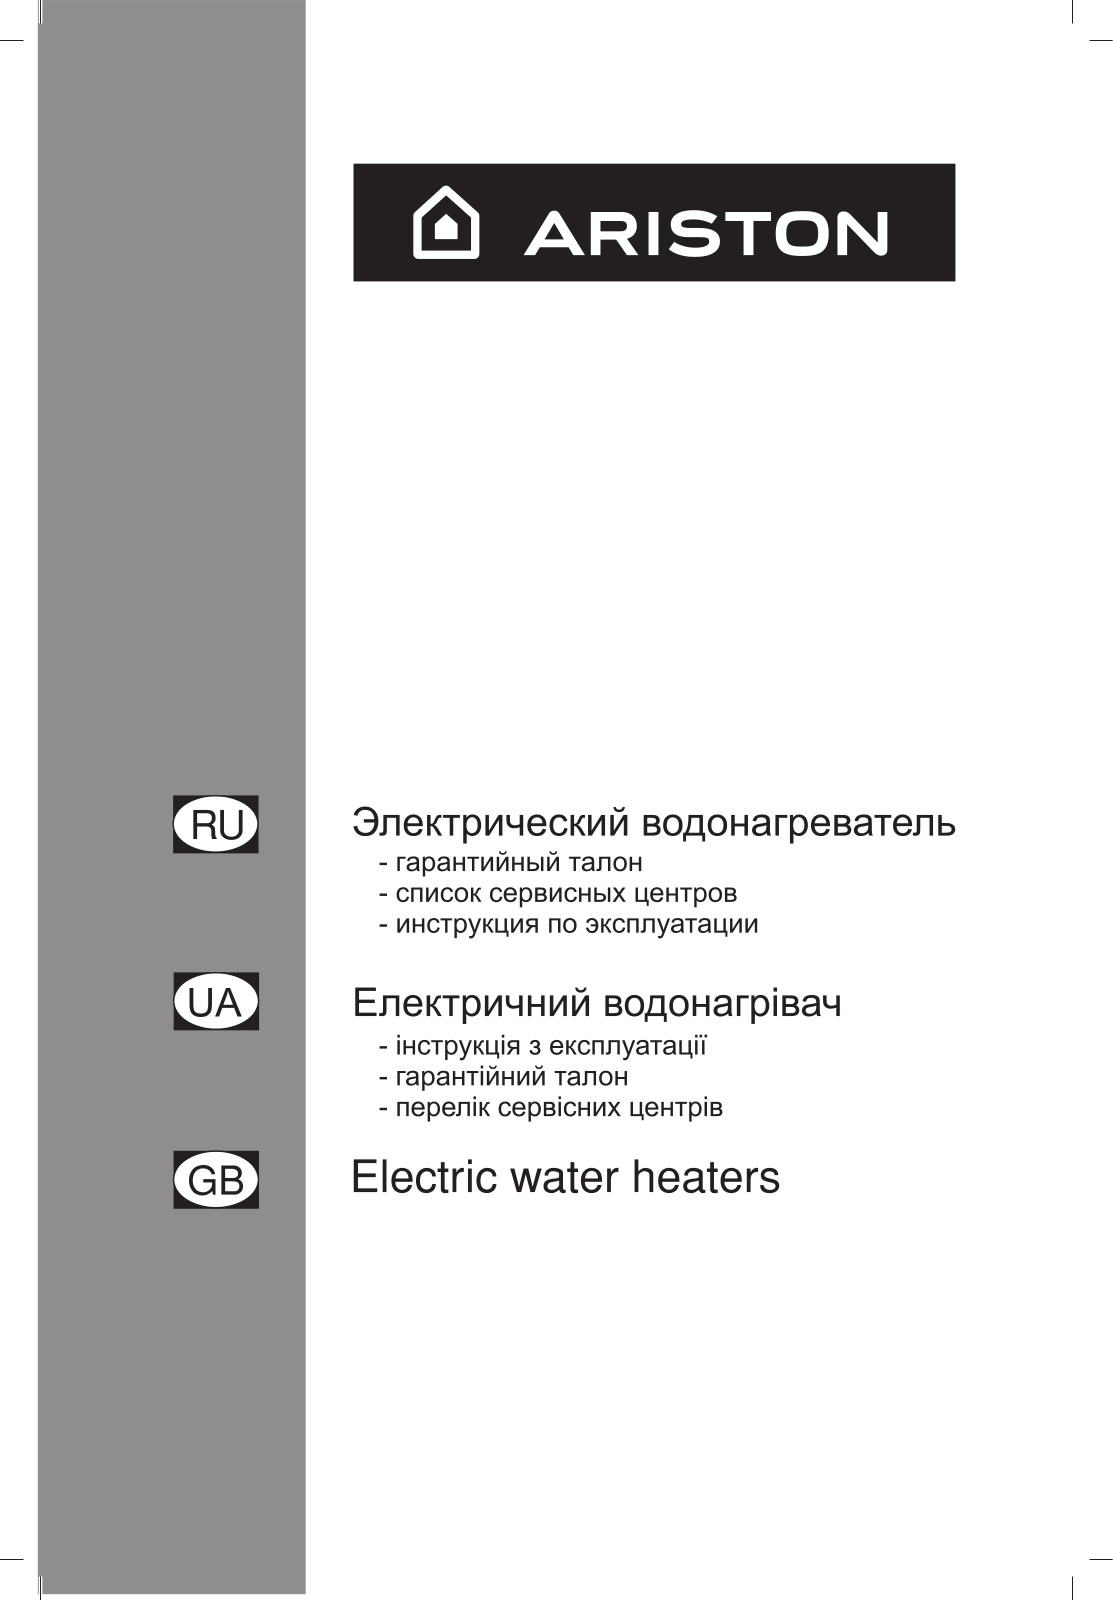 Ariston ABS PLATINUM ECO User Manual